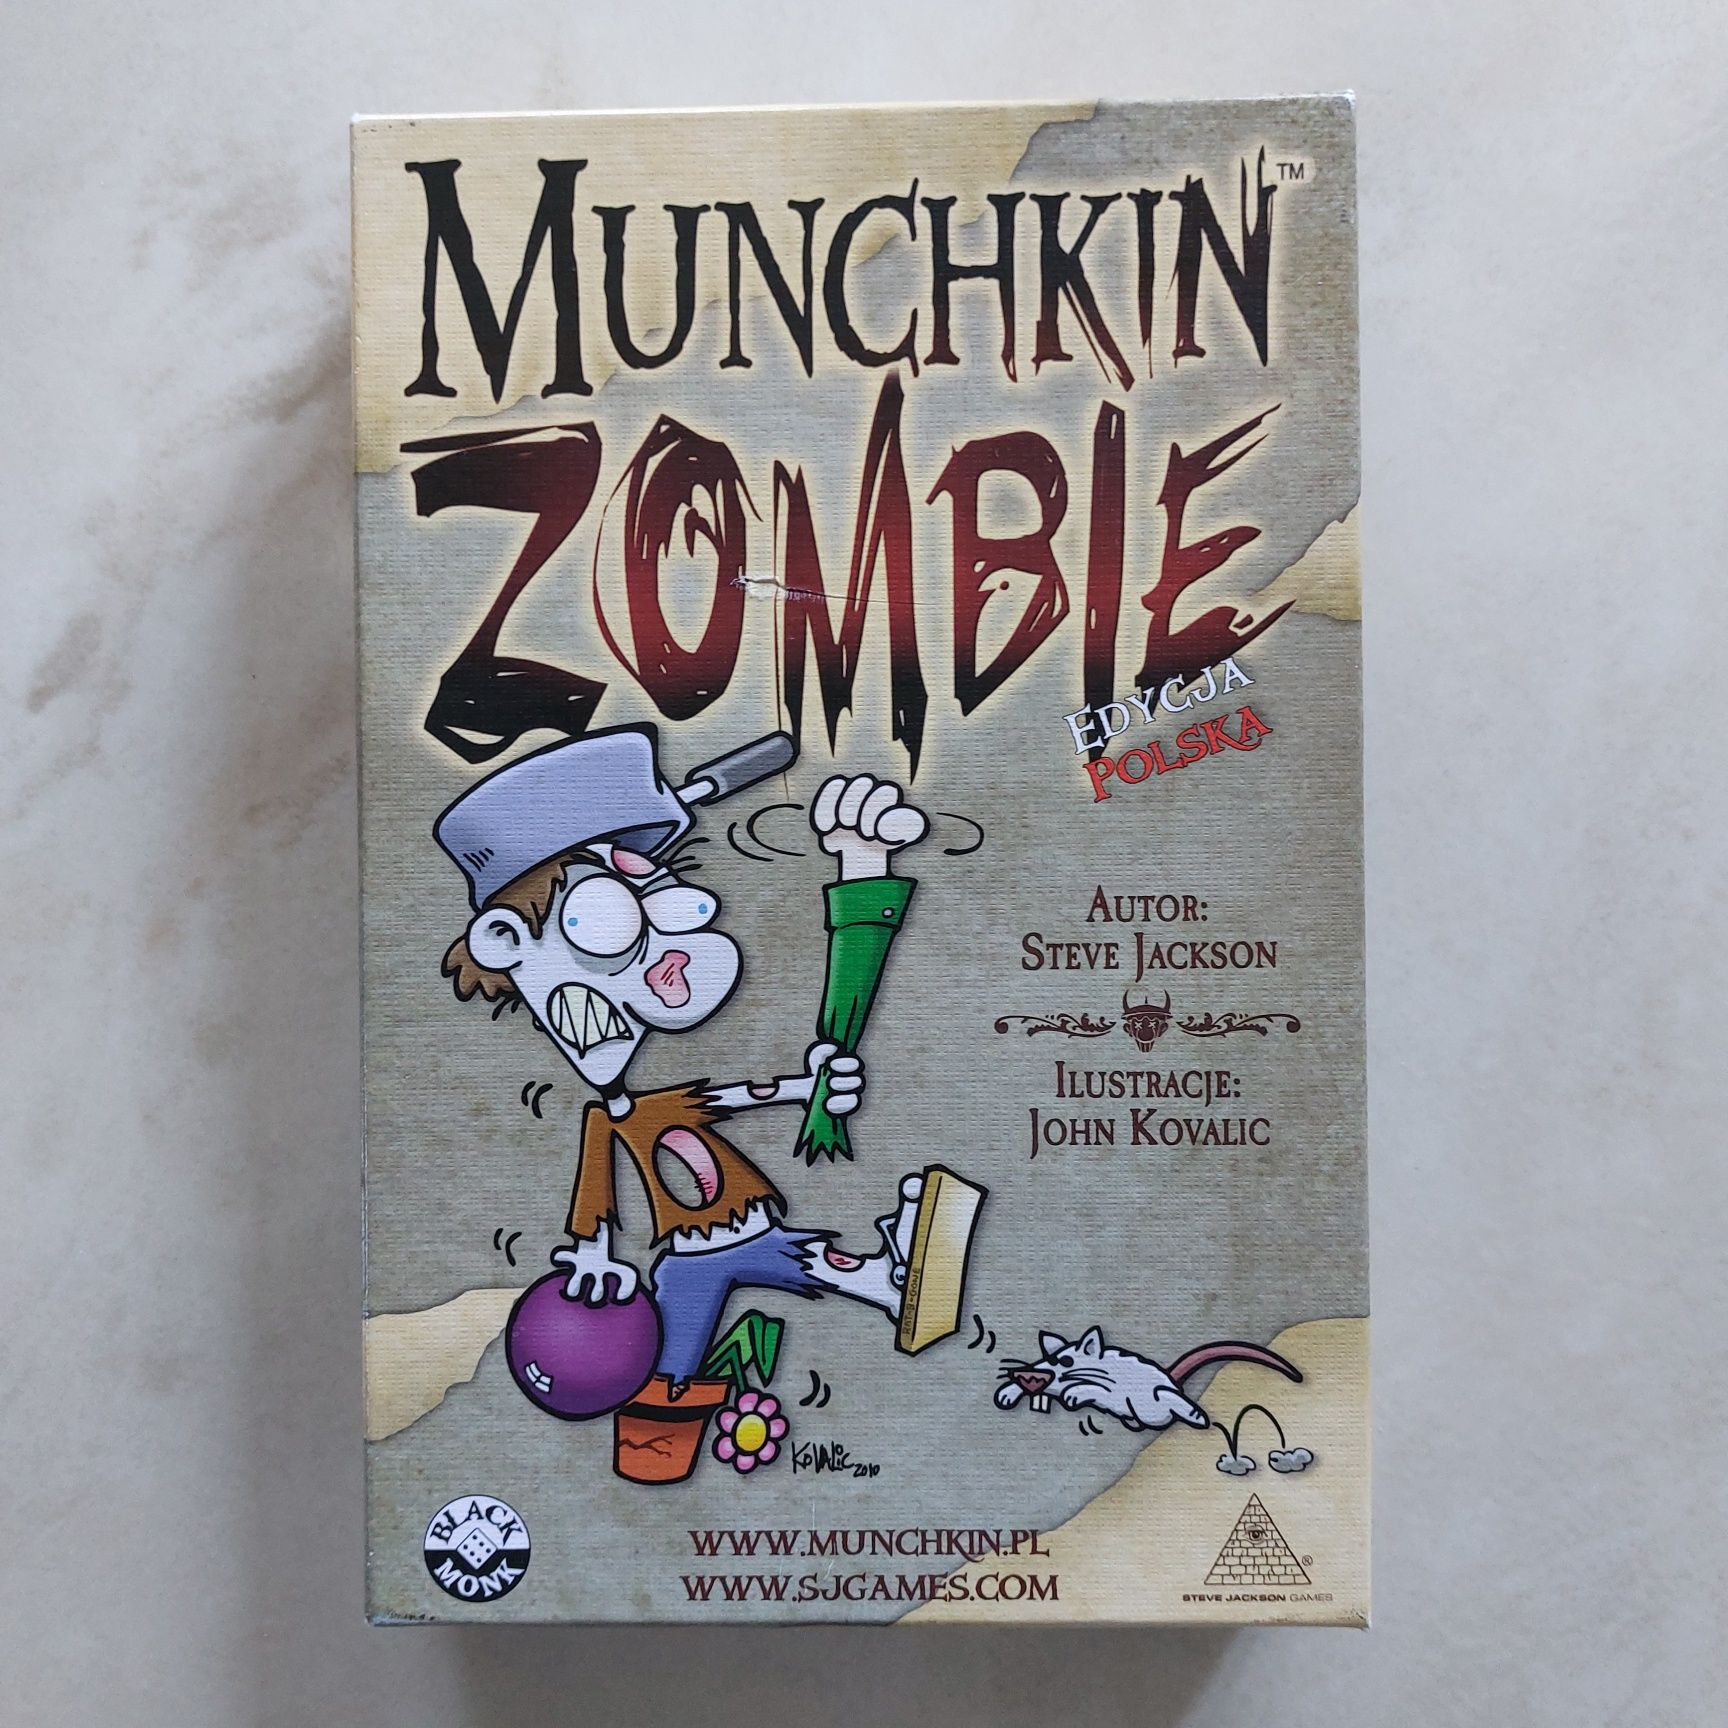 Munchkin Zombie edycja polska